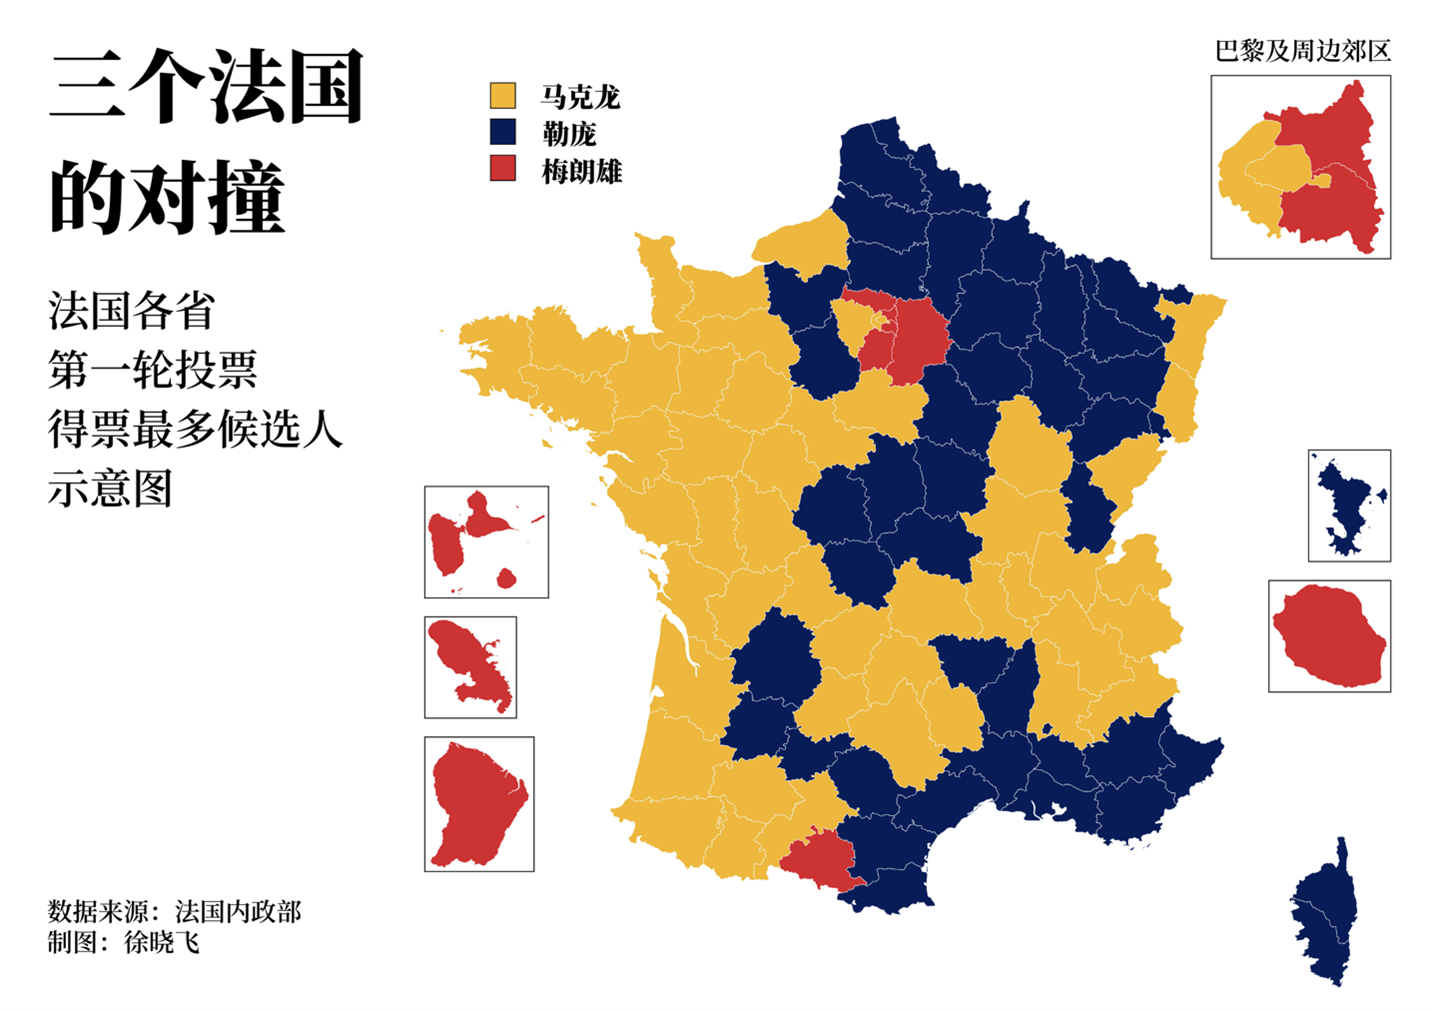 马克龙赢得了左派根基身后的法国西部以及包括首都巴黎在内的法国许多大都市，勒庞拿下了衰败中的法国北部传统工业区以及保守的南部地中海沿岸，梅朗雄则在法国海外省以及巴黎郊区的中低收入阶层中取得优异成绩，在各个大城市也与马克龙势均力敌。第一轮投票结果展示出了“三个法国”的对撞。